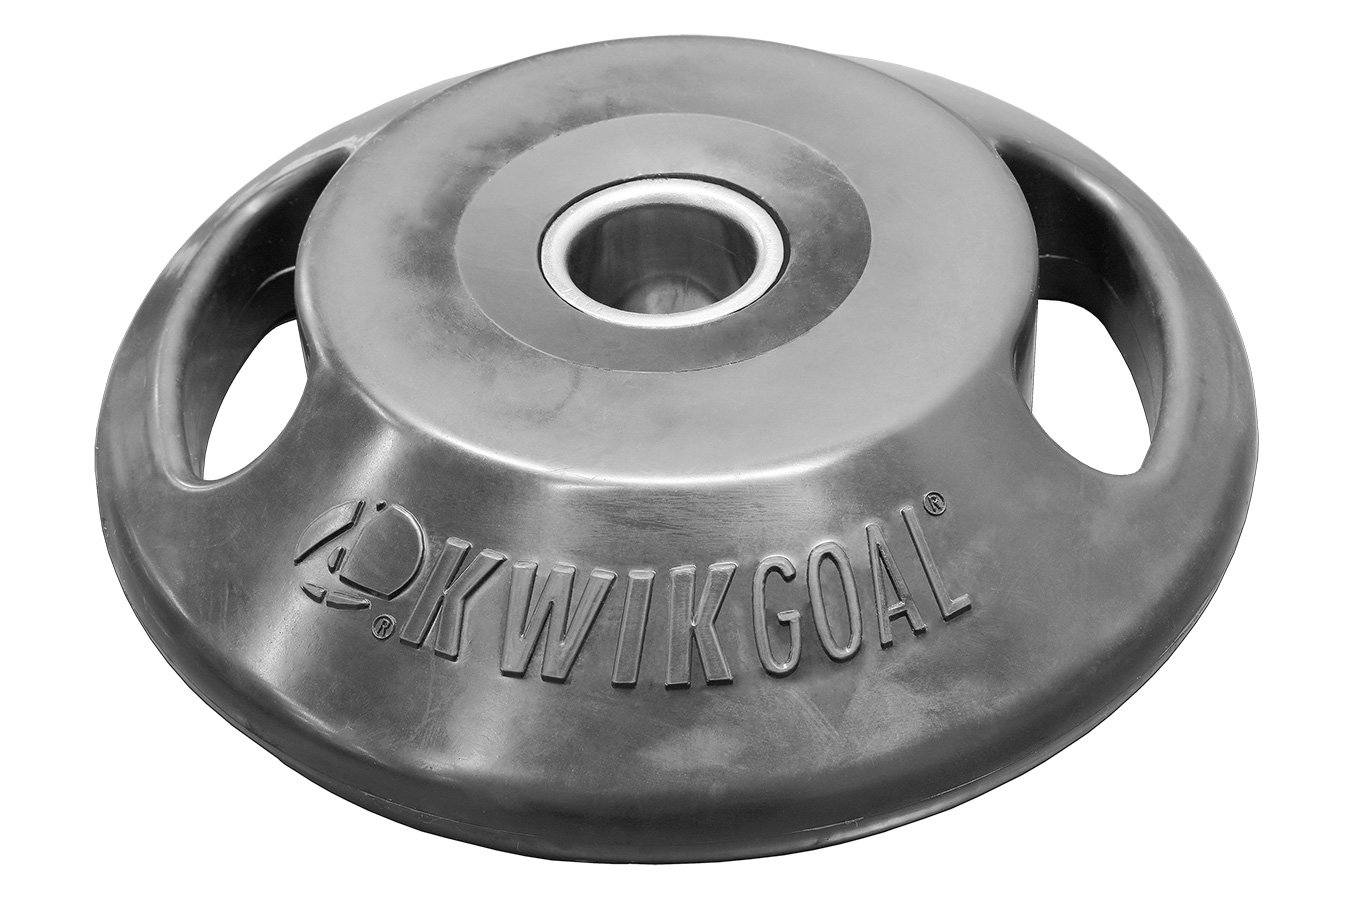 Kwikgoal Air TOM® | 16B3702 Training equipment Kwikgoal 